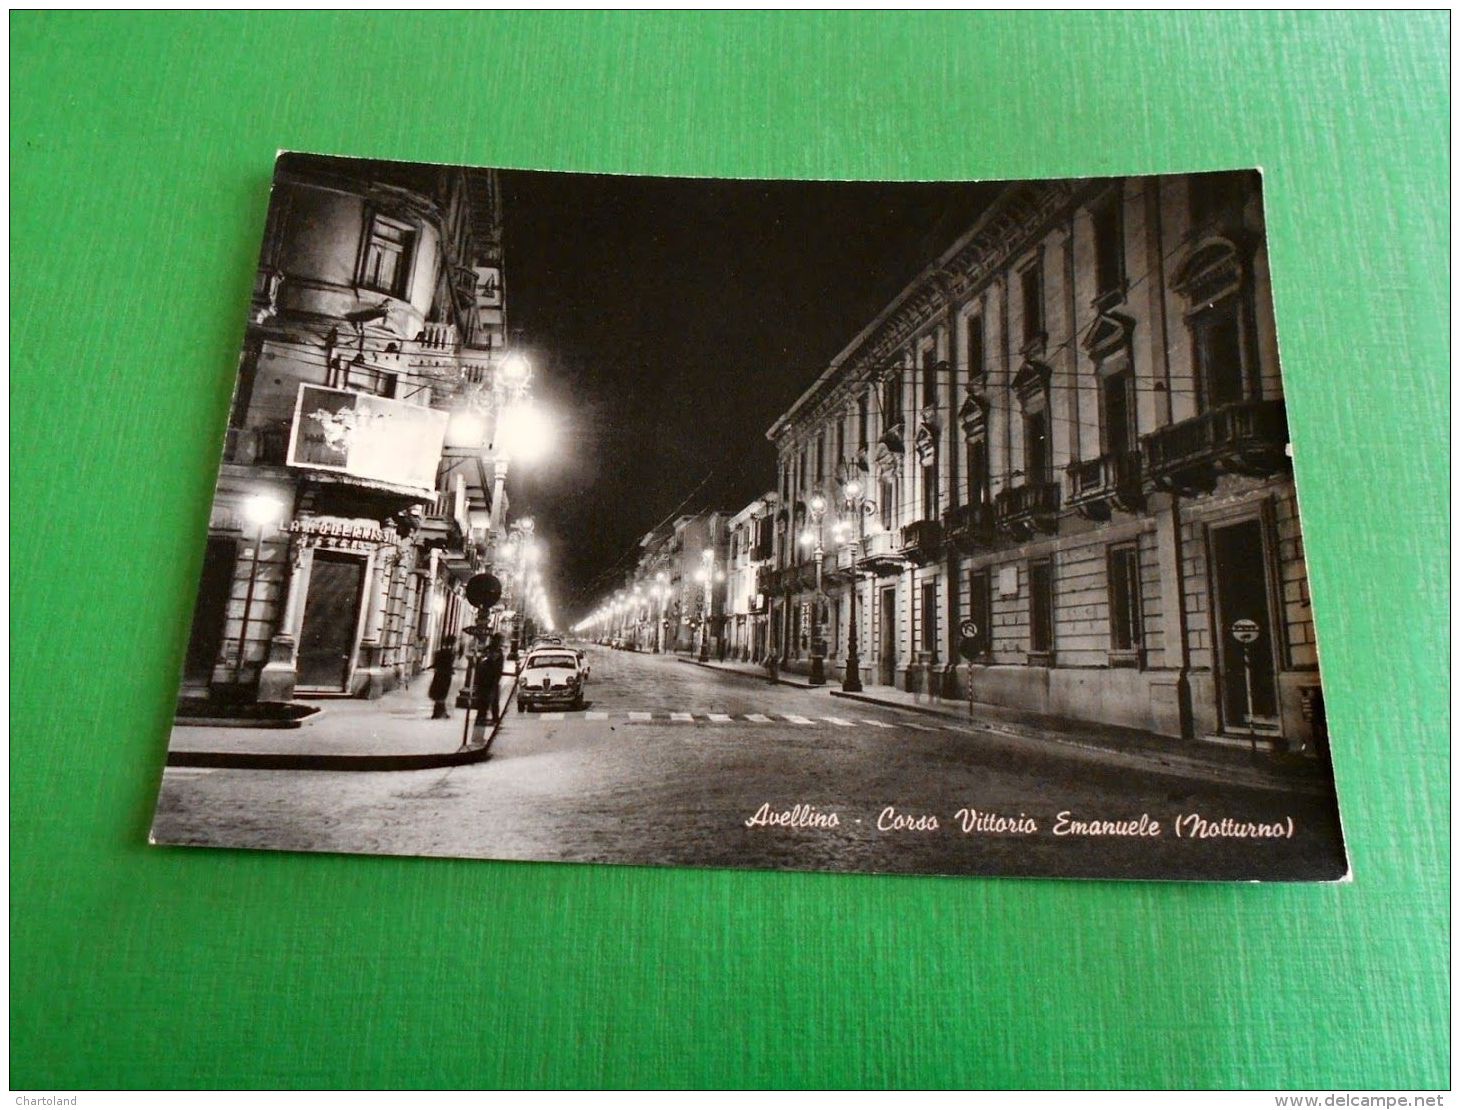 Cartolina Avellino - Corso Vittorio Emanuele ( Notturno ) 1960 Ca   #1 - Avellino